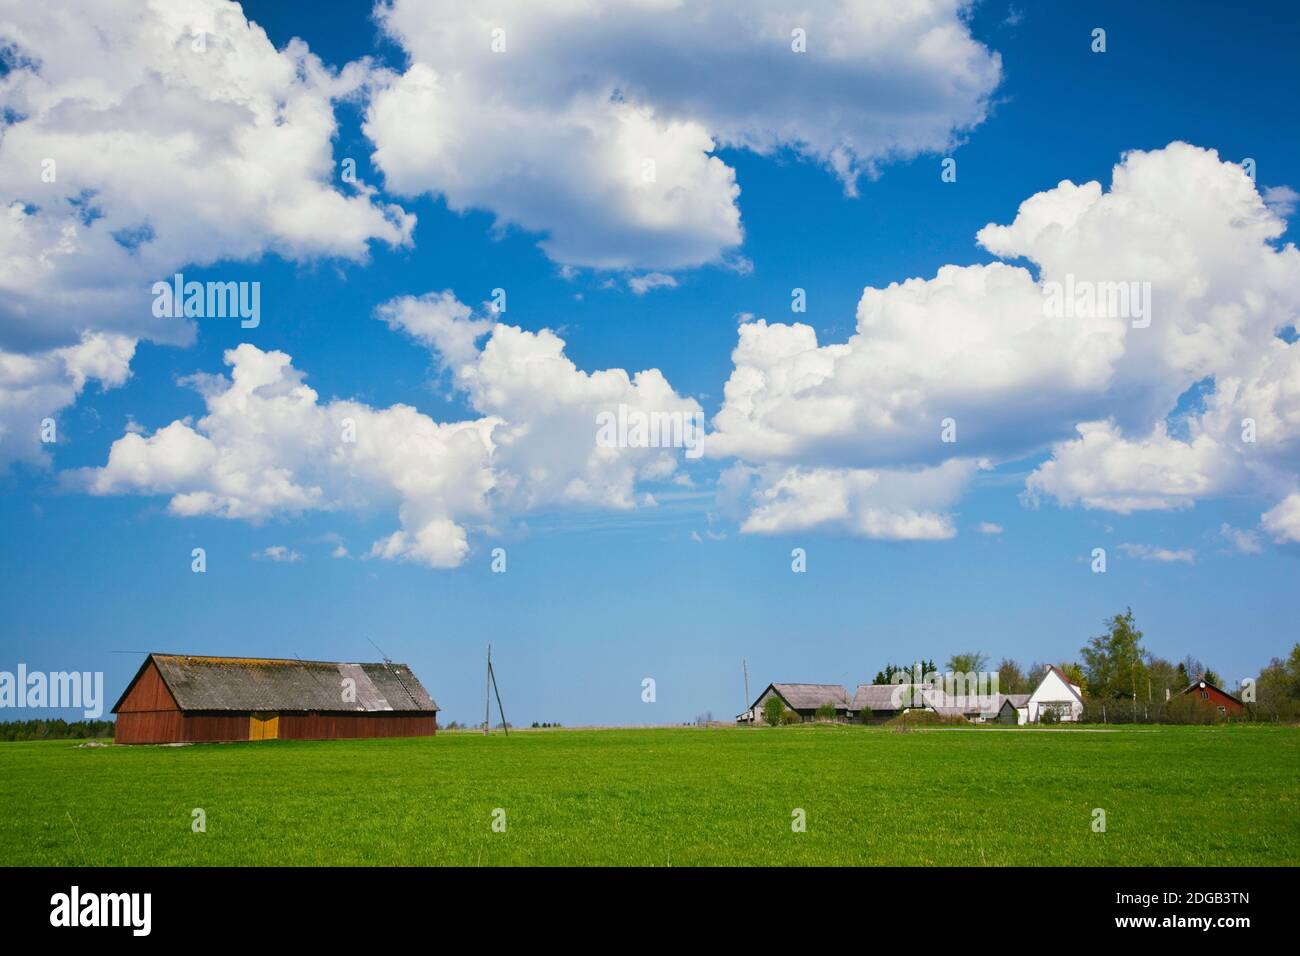 Farmhouse in a field, Loksa, Lahemaa National Park, Tallinn, Estonia Stock Photo